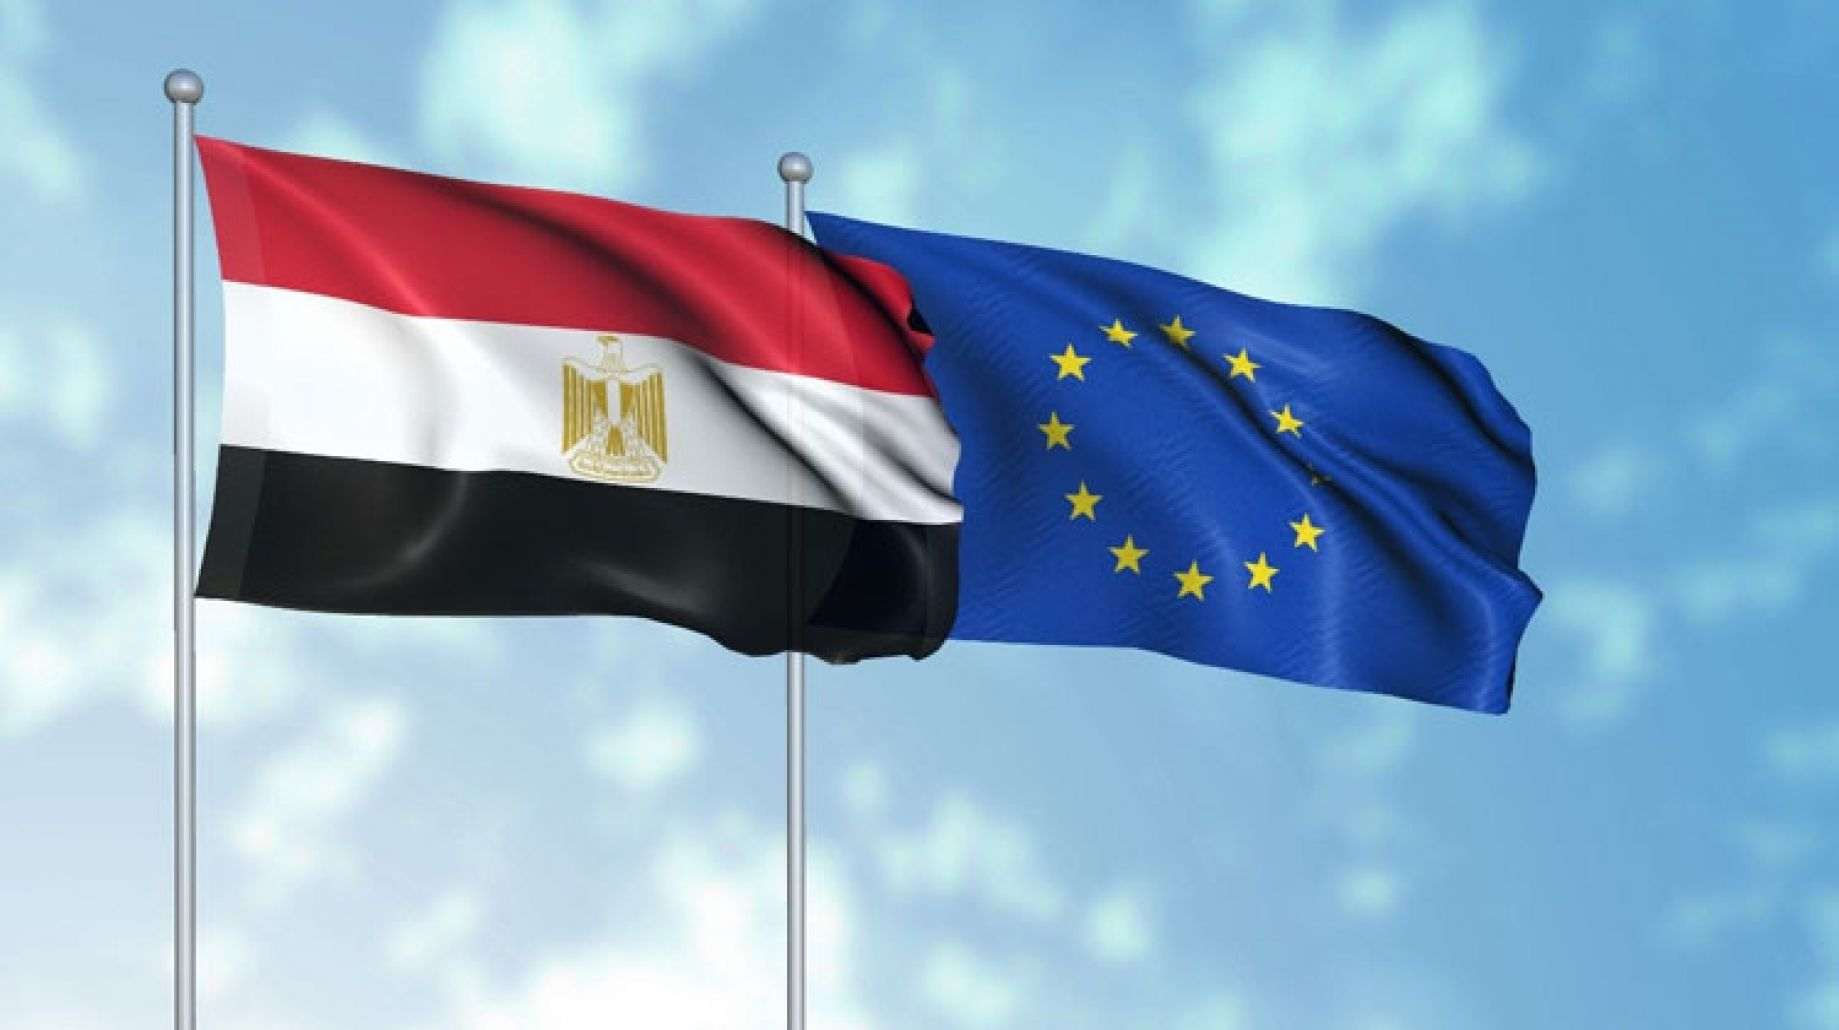 L’Égypte accueillera au Caire un atelier régional hybride “UE-Pays voisins du Sud” sur les systèmes alimentaires durables